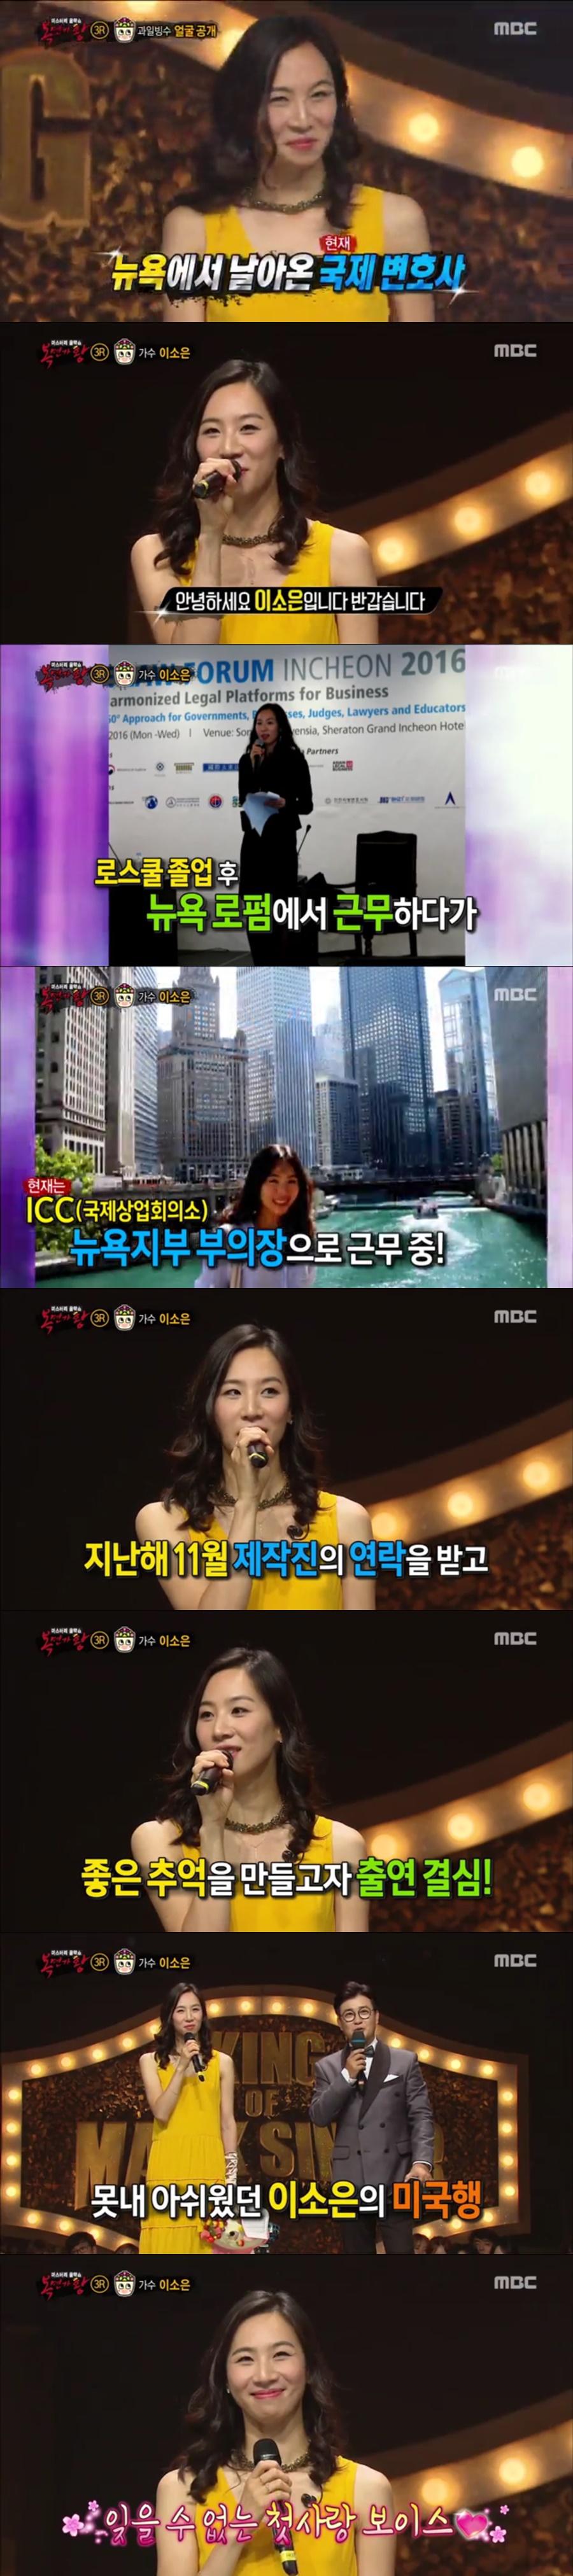 복면가왕 과일빙수 이소은 / 사진: MBC '복면가왕' 방송 캡처